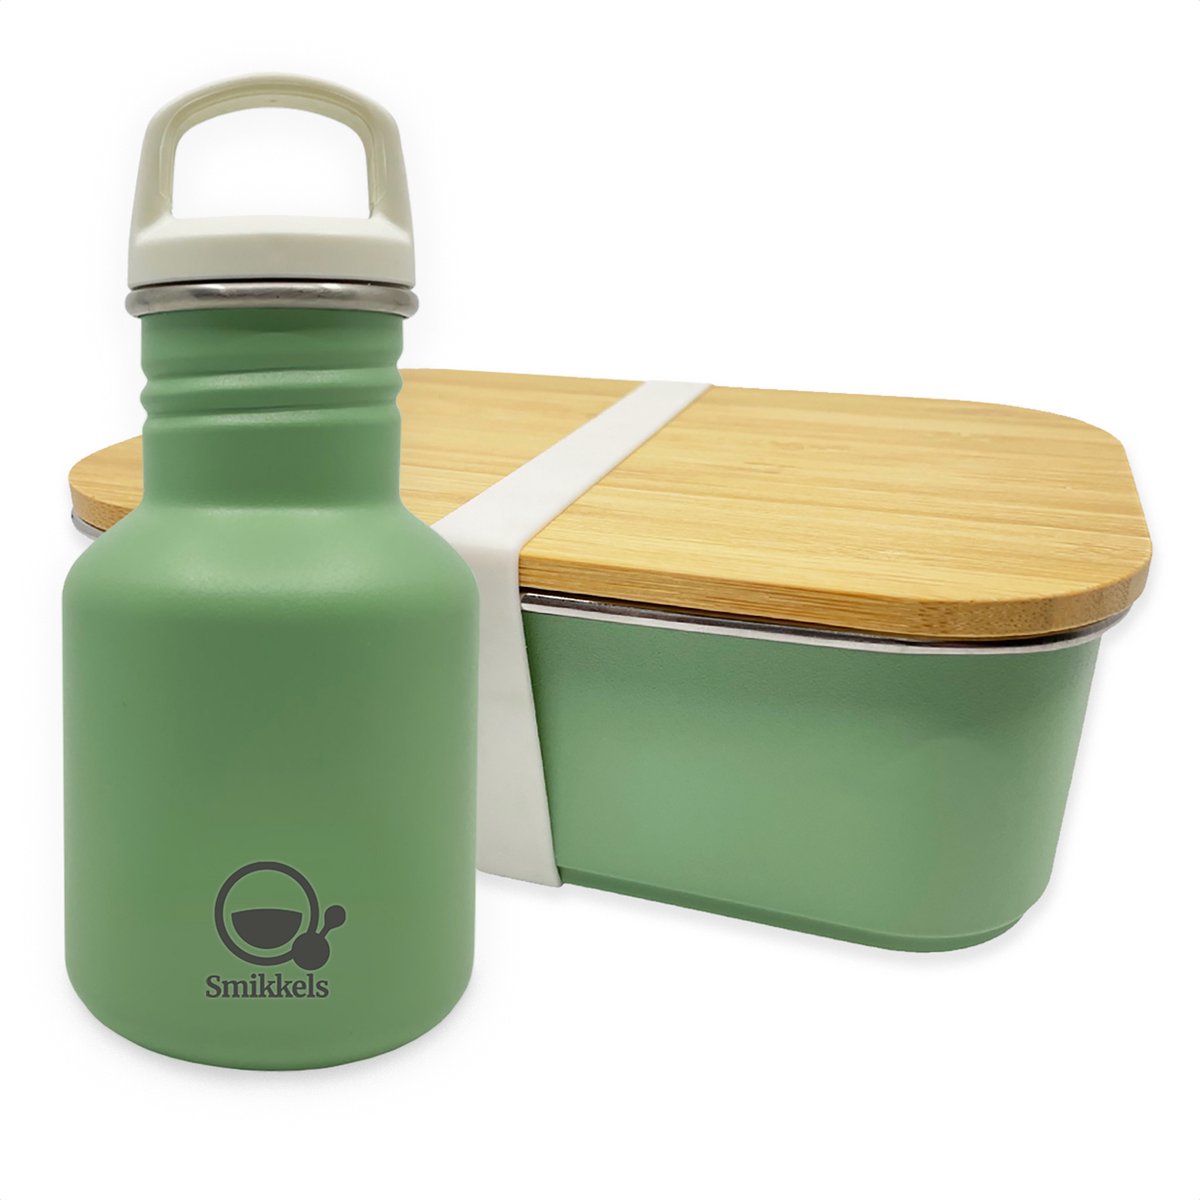 Smikkels - Schoolset RVS lunchbox met drinkfles kind - Groen - Duurzaam - Afsluitdop en rietjesdop - Lunchset Broodtrommel en Schoolbeker - Basisschool